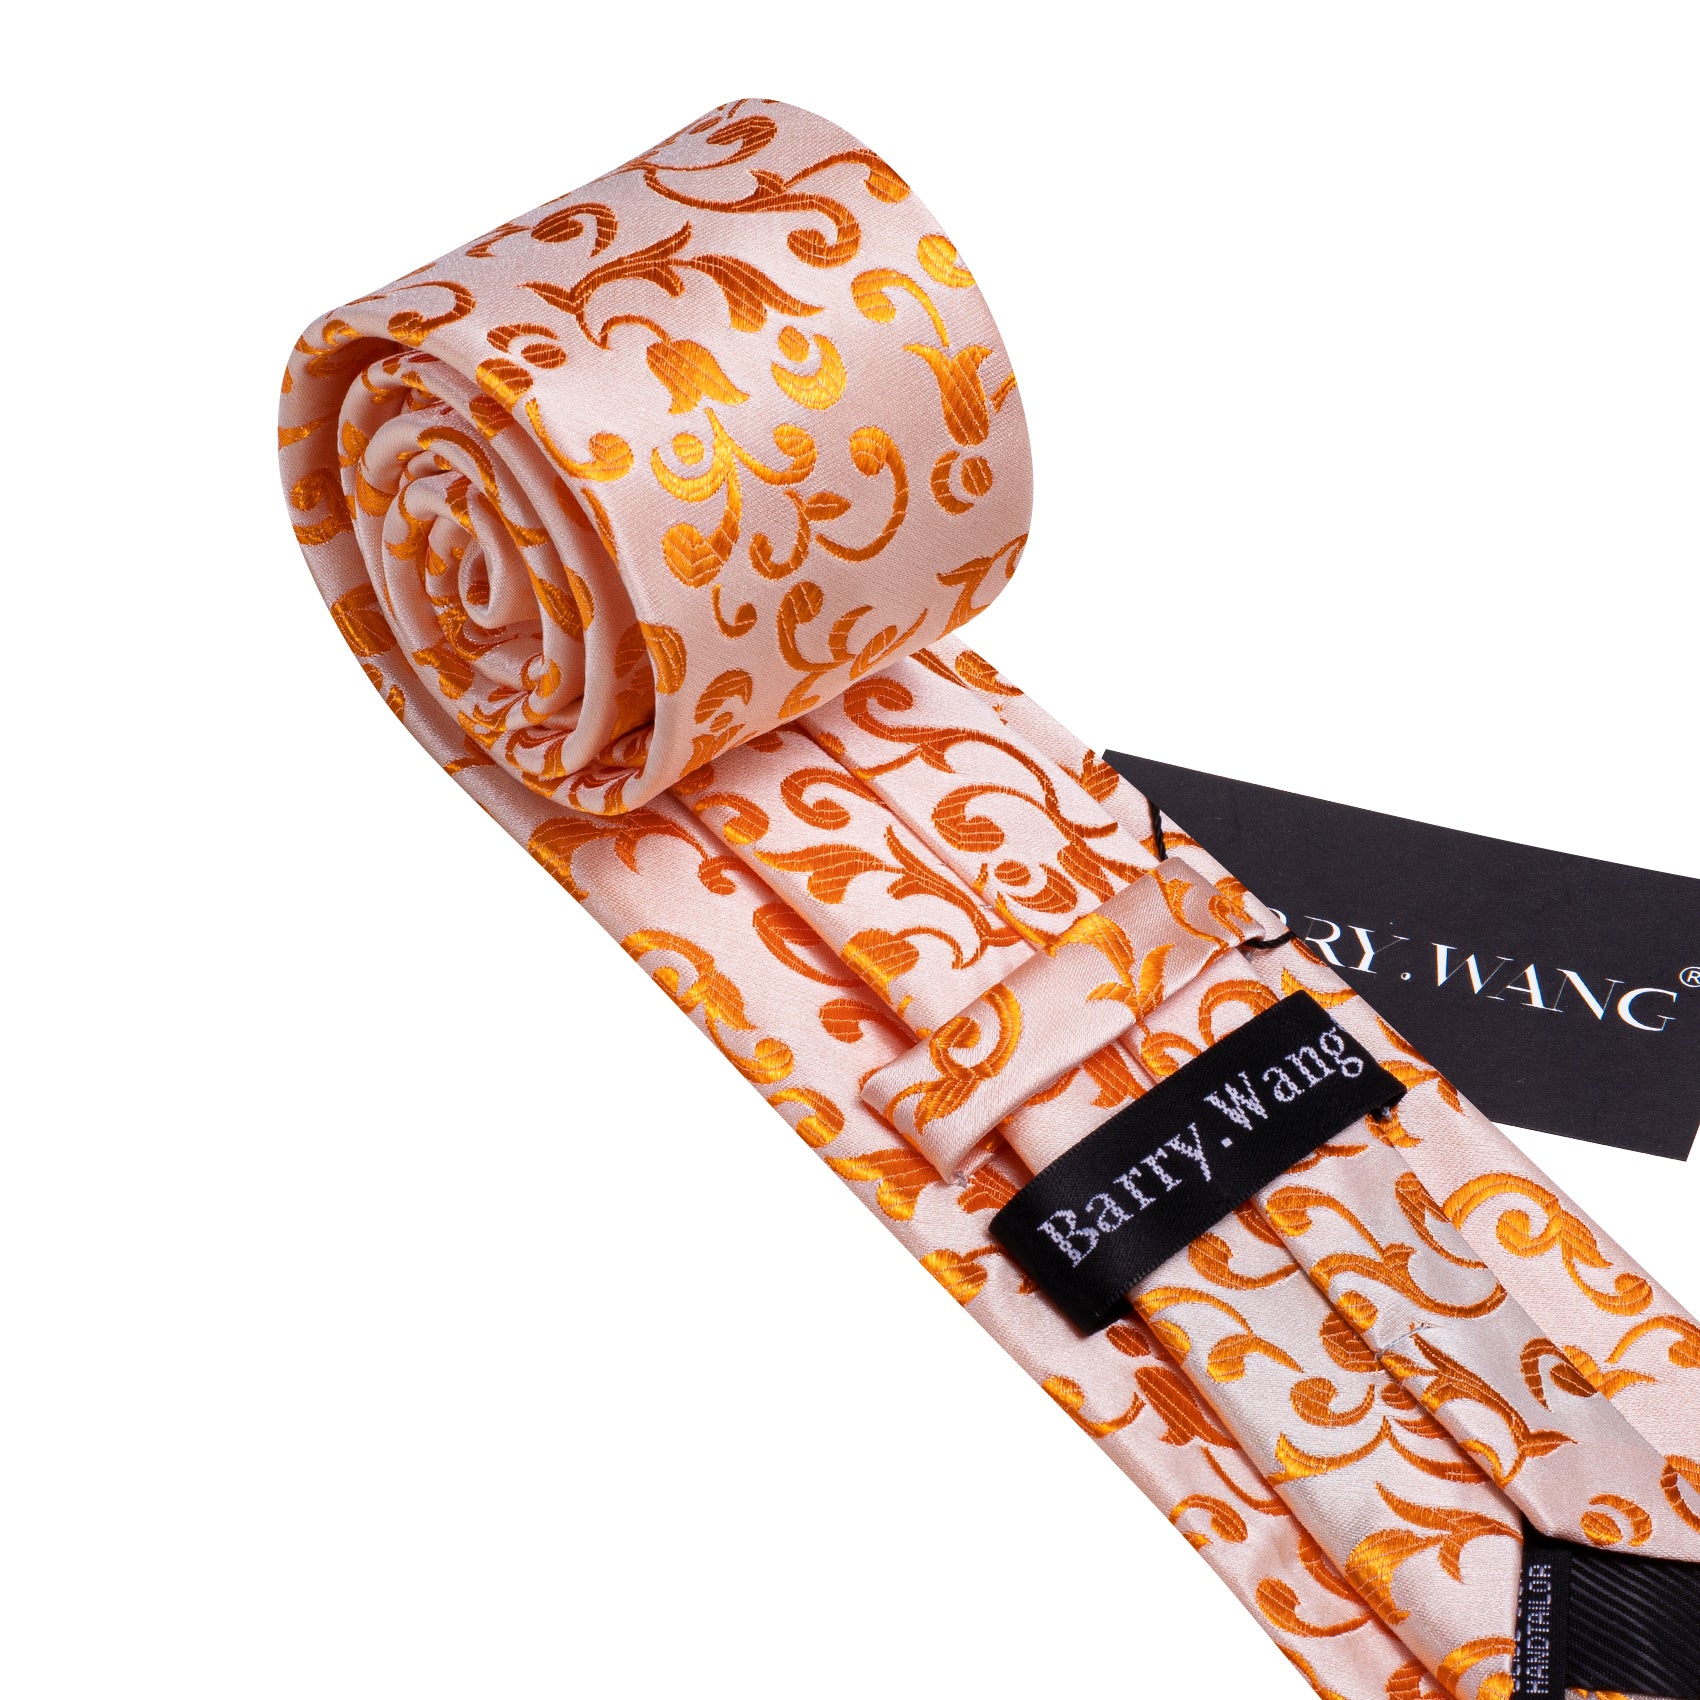 Pink Orange Floral Silk Tie Hanky Cufflinks Set